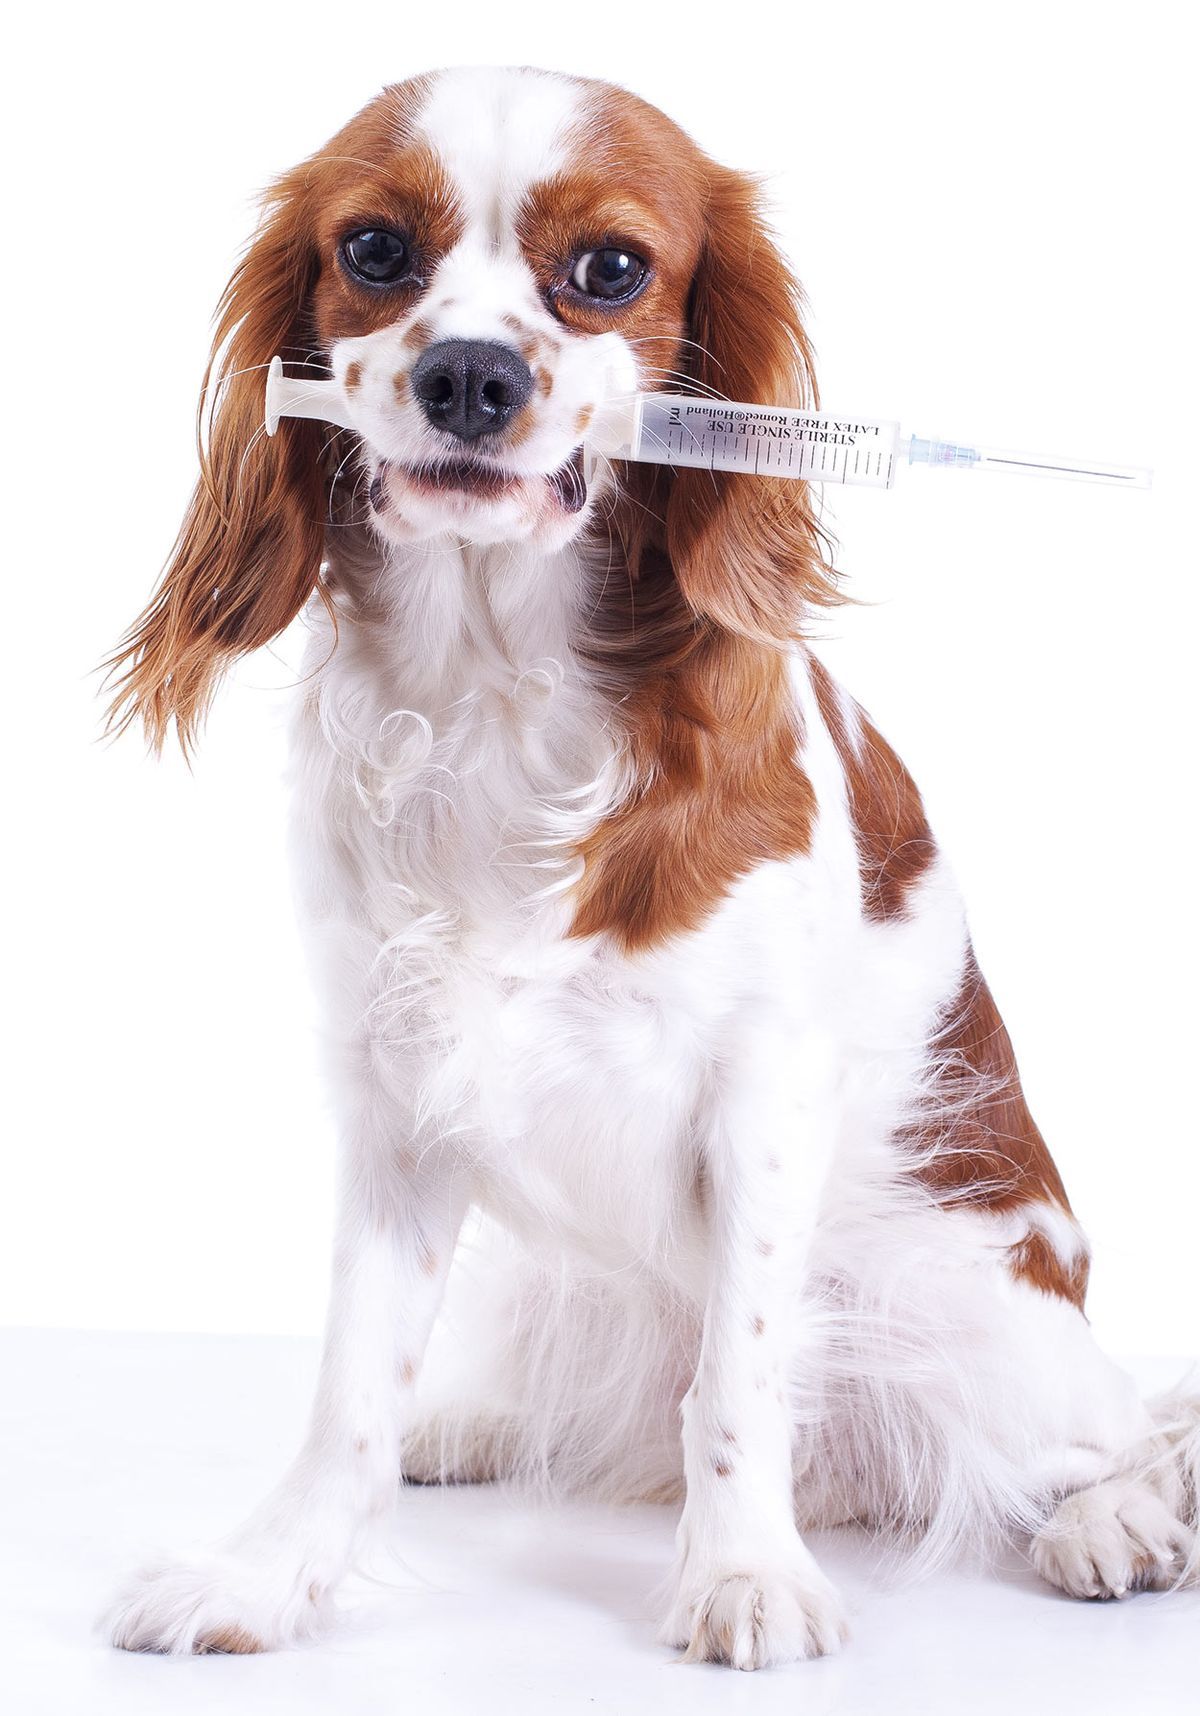 Časovni načrt cepljenja psov